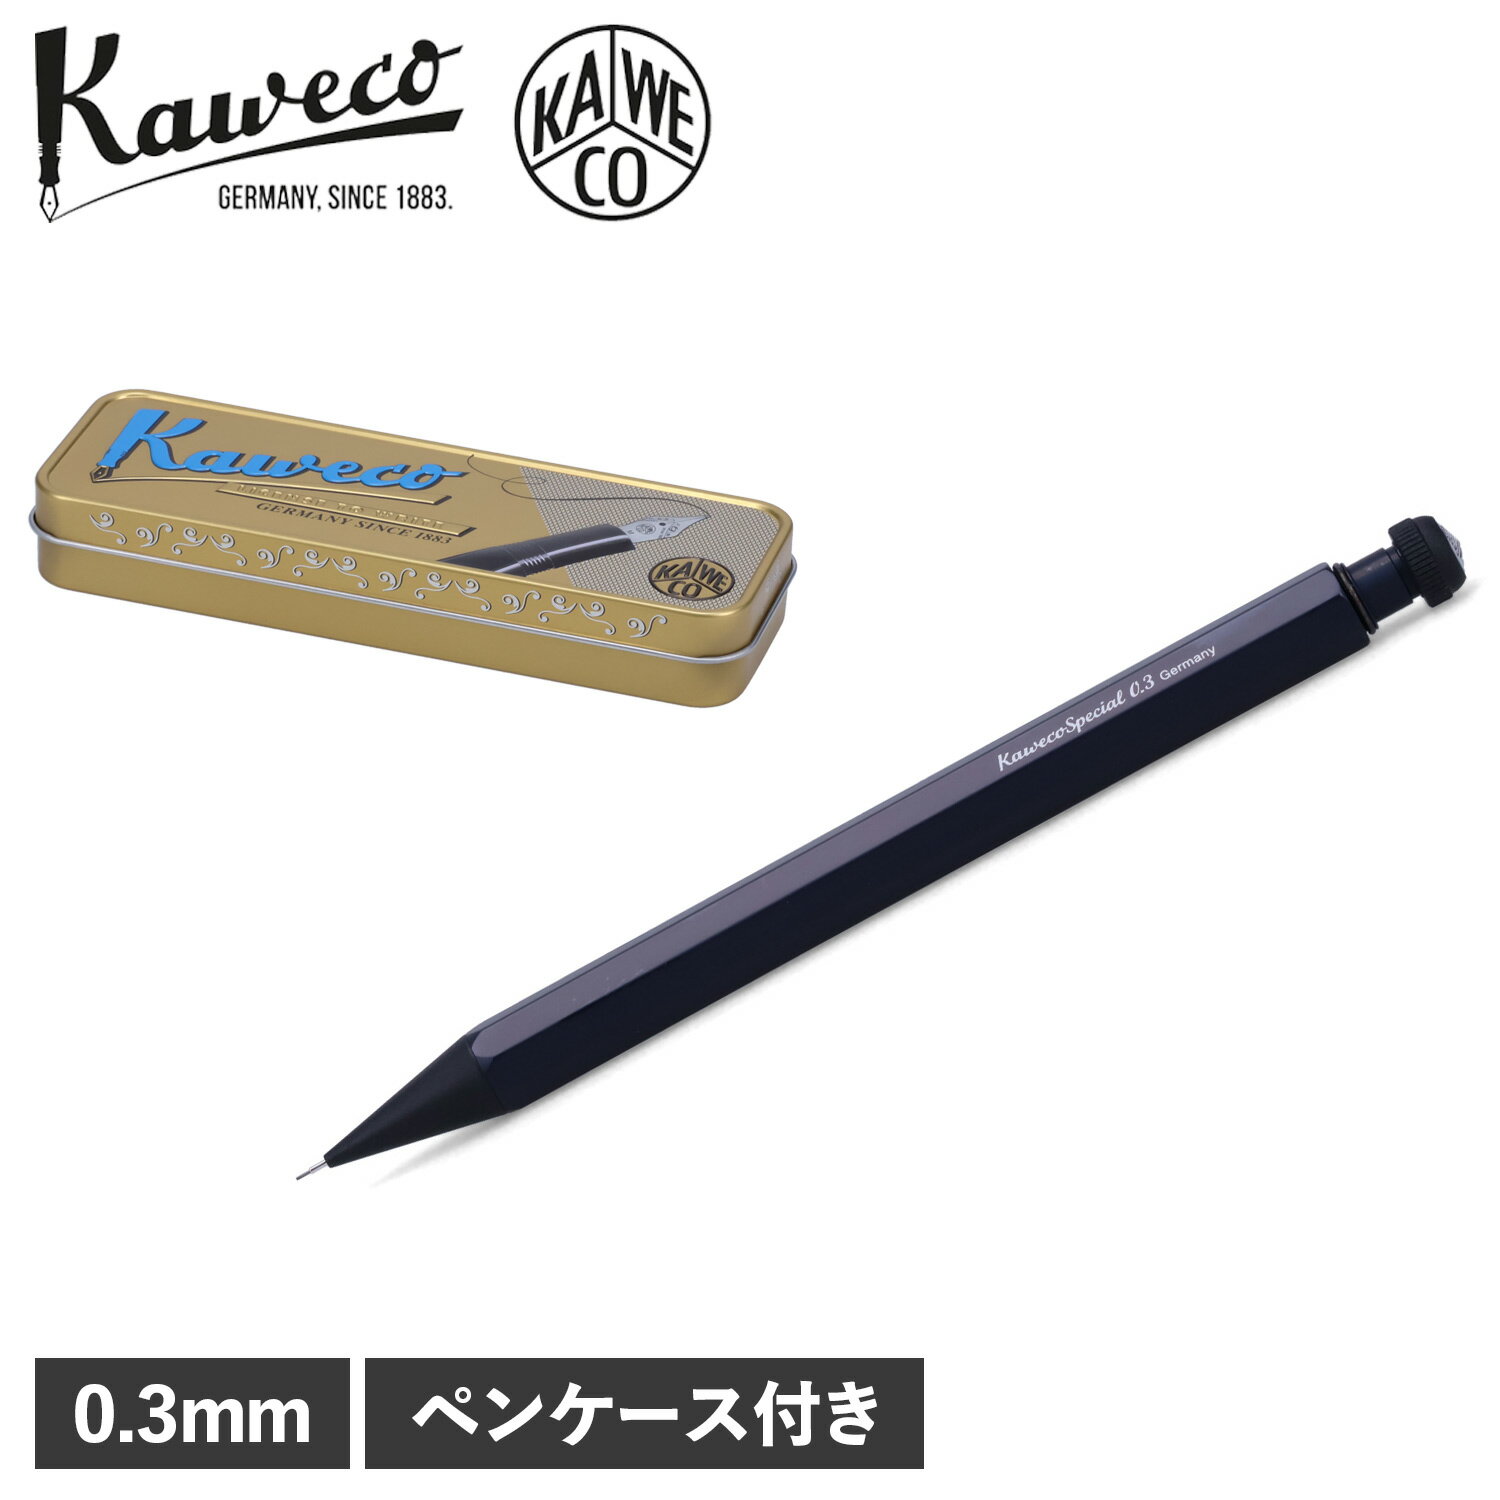  kaweco カヴェコ ペンシルスペシャル シャープペン シャーペン 0.3mm 高級 SPECIAL PENCIL ブラック 黒 PS-03